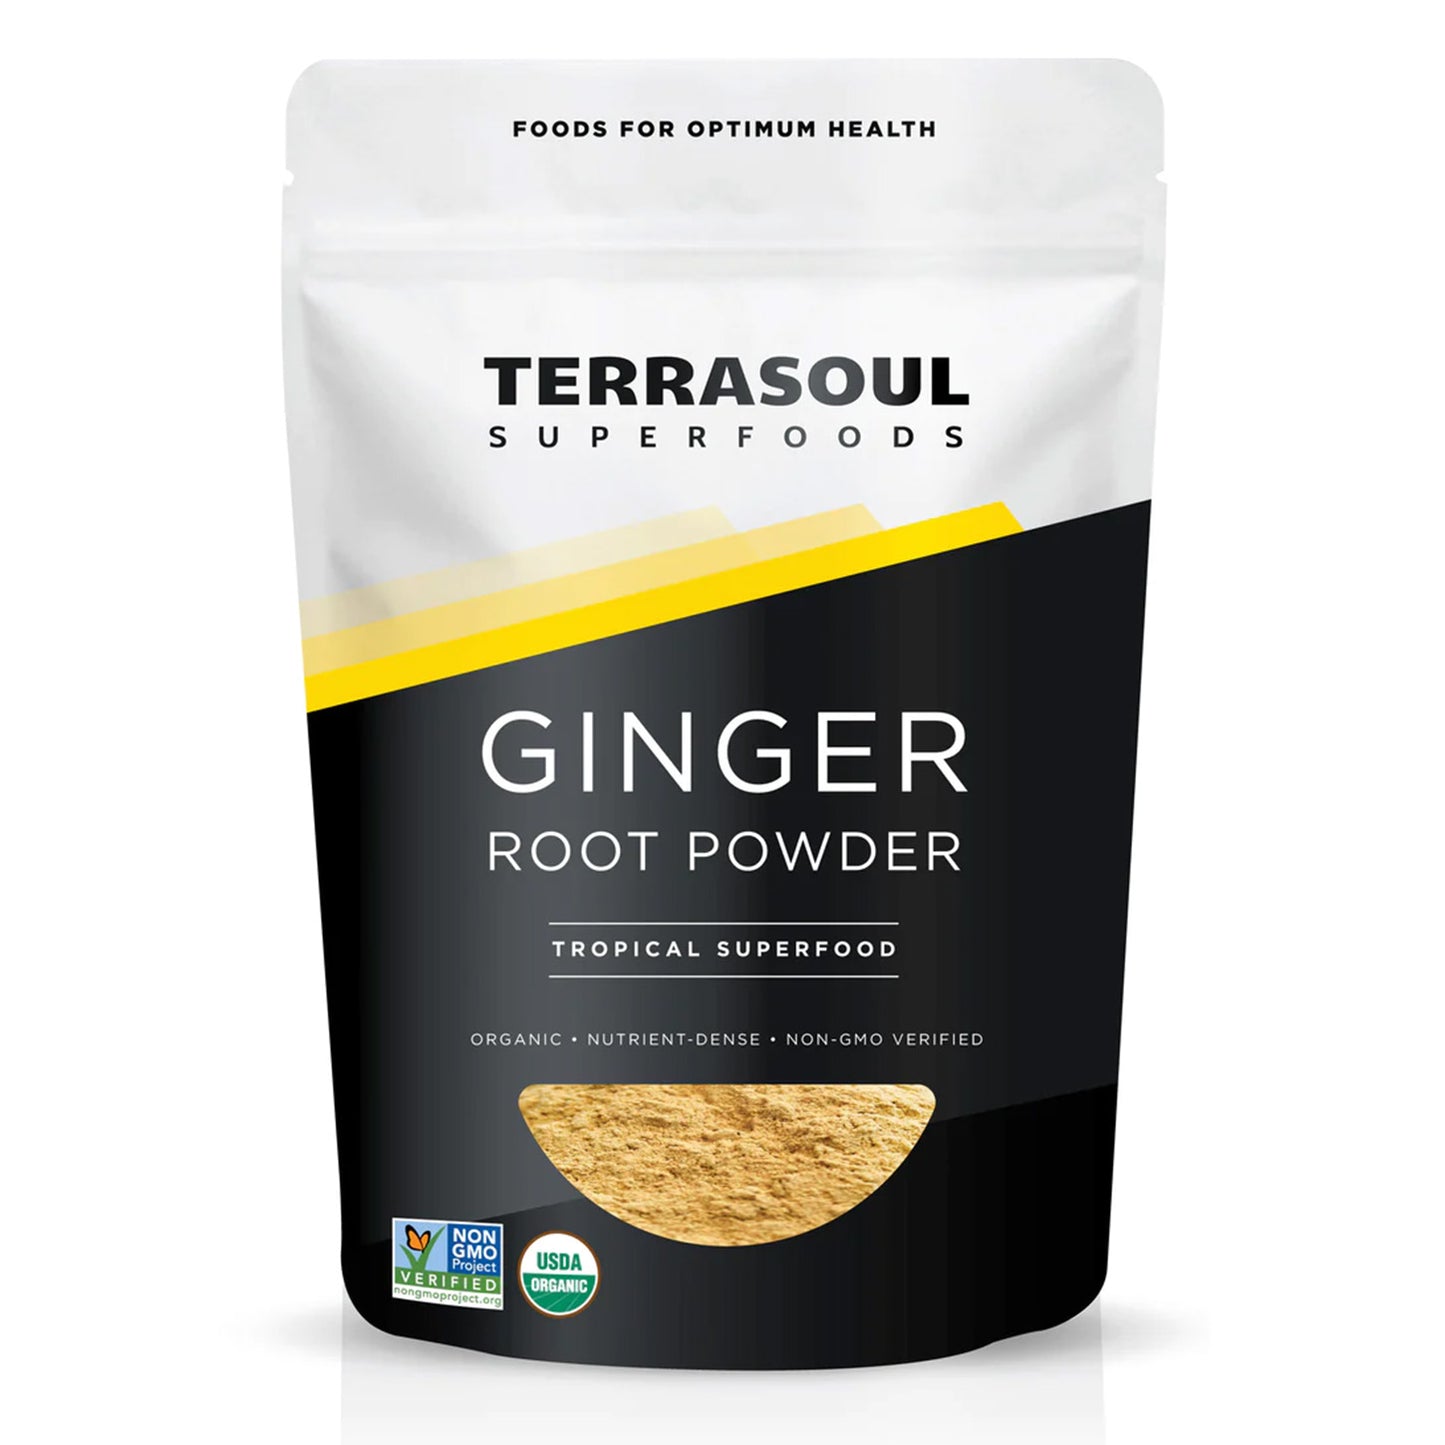 Añade un Toque de Calidez a tus Platos con Terrasoul Superfoods Ginger Powder | ProHealth Shop [Panamá]